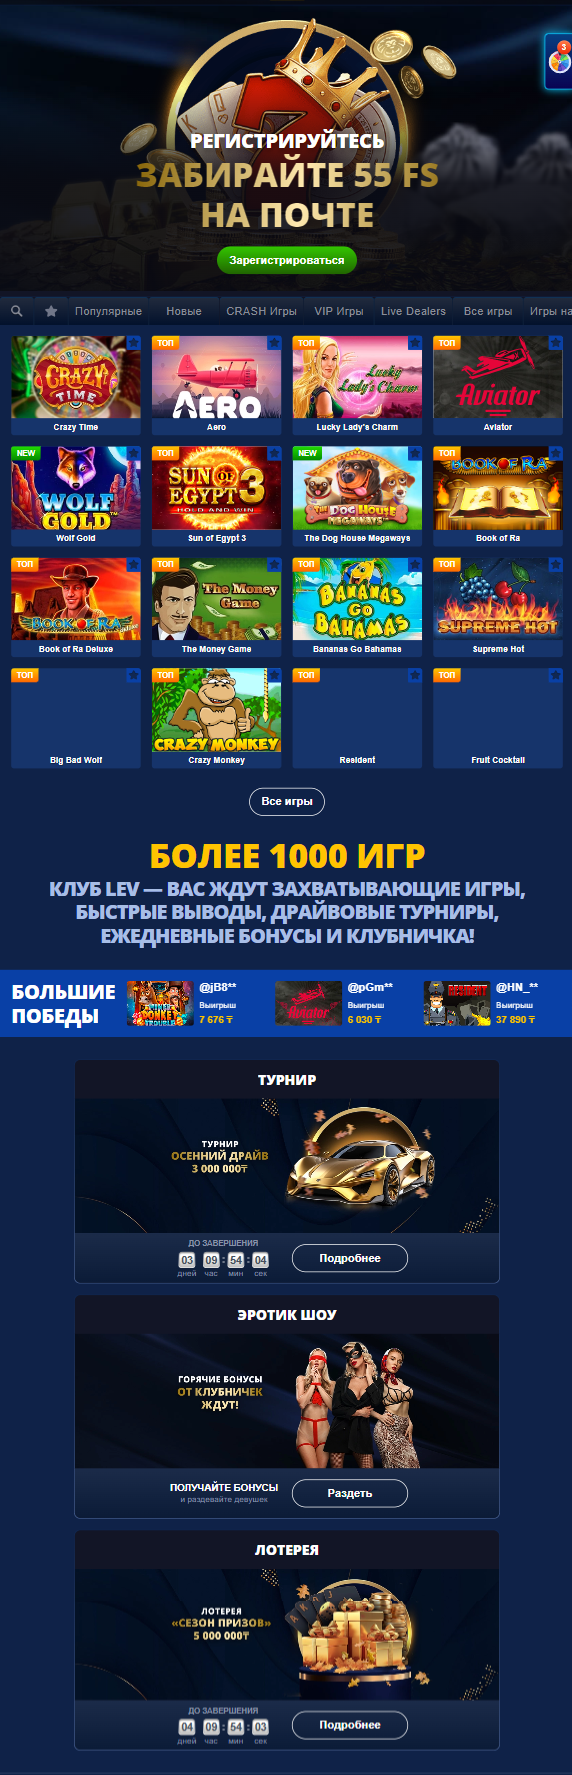 Официальний сайт клуба Lev в Казахстане